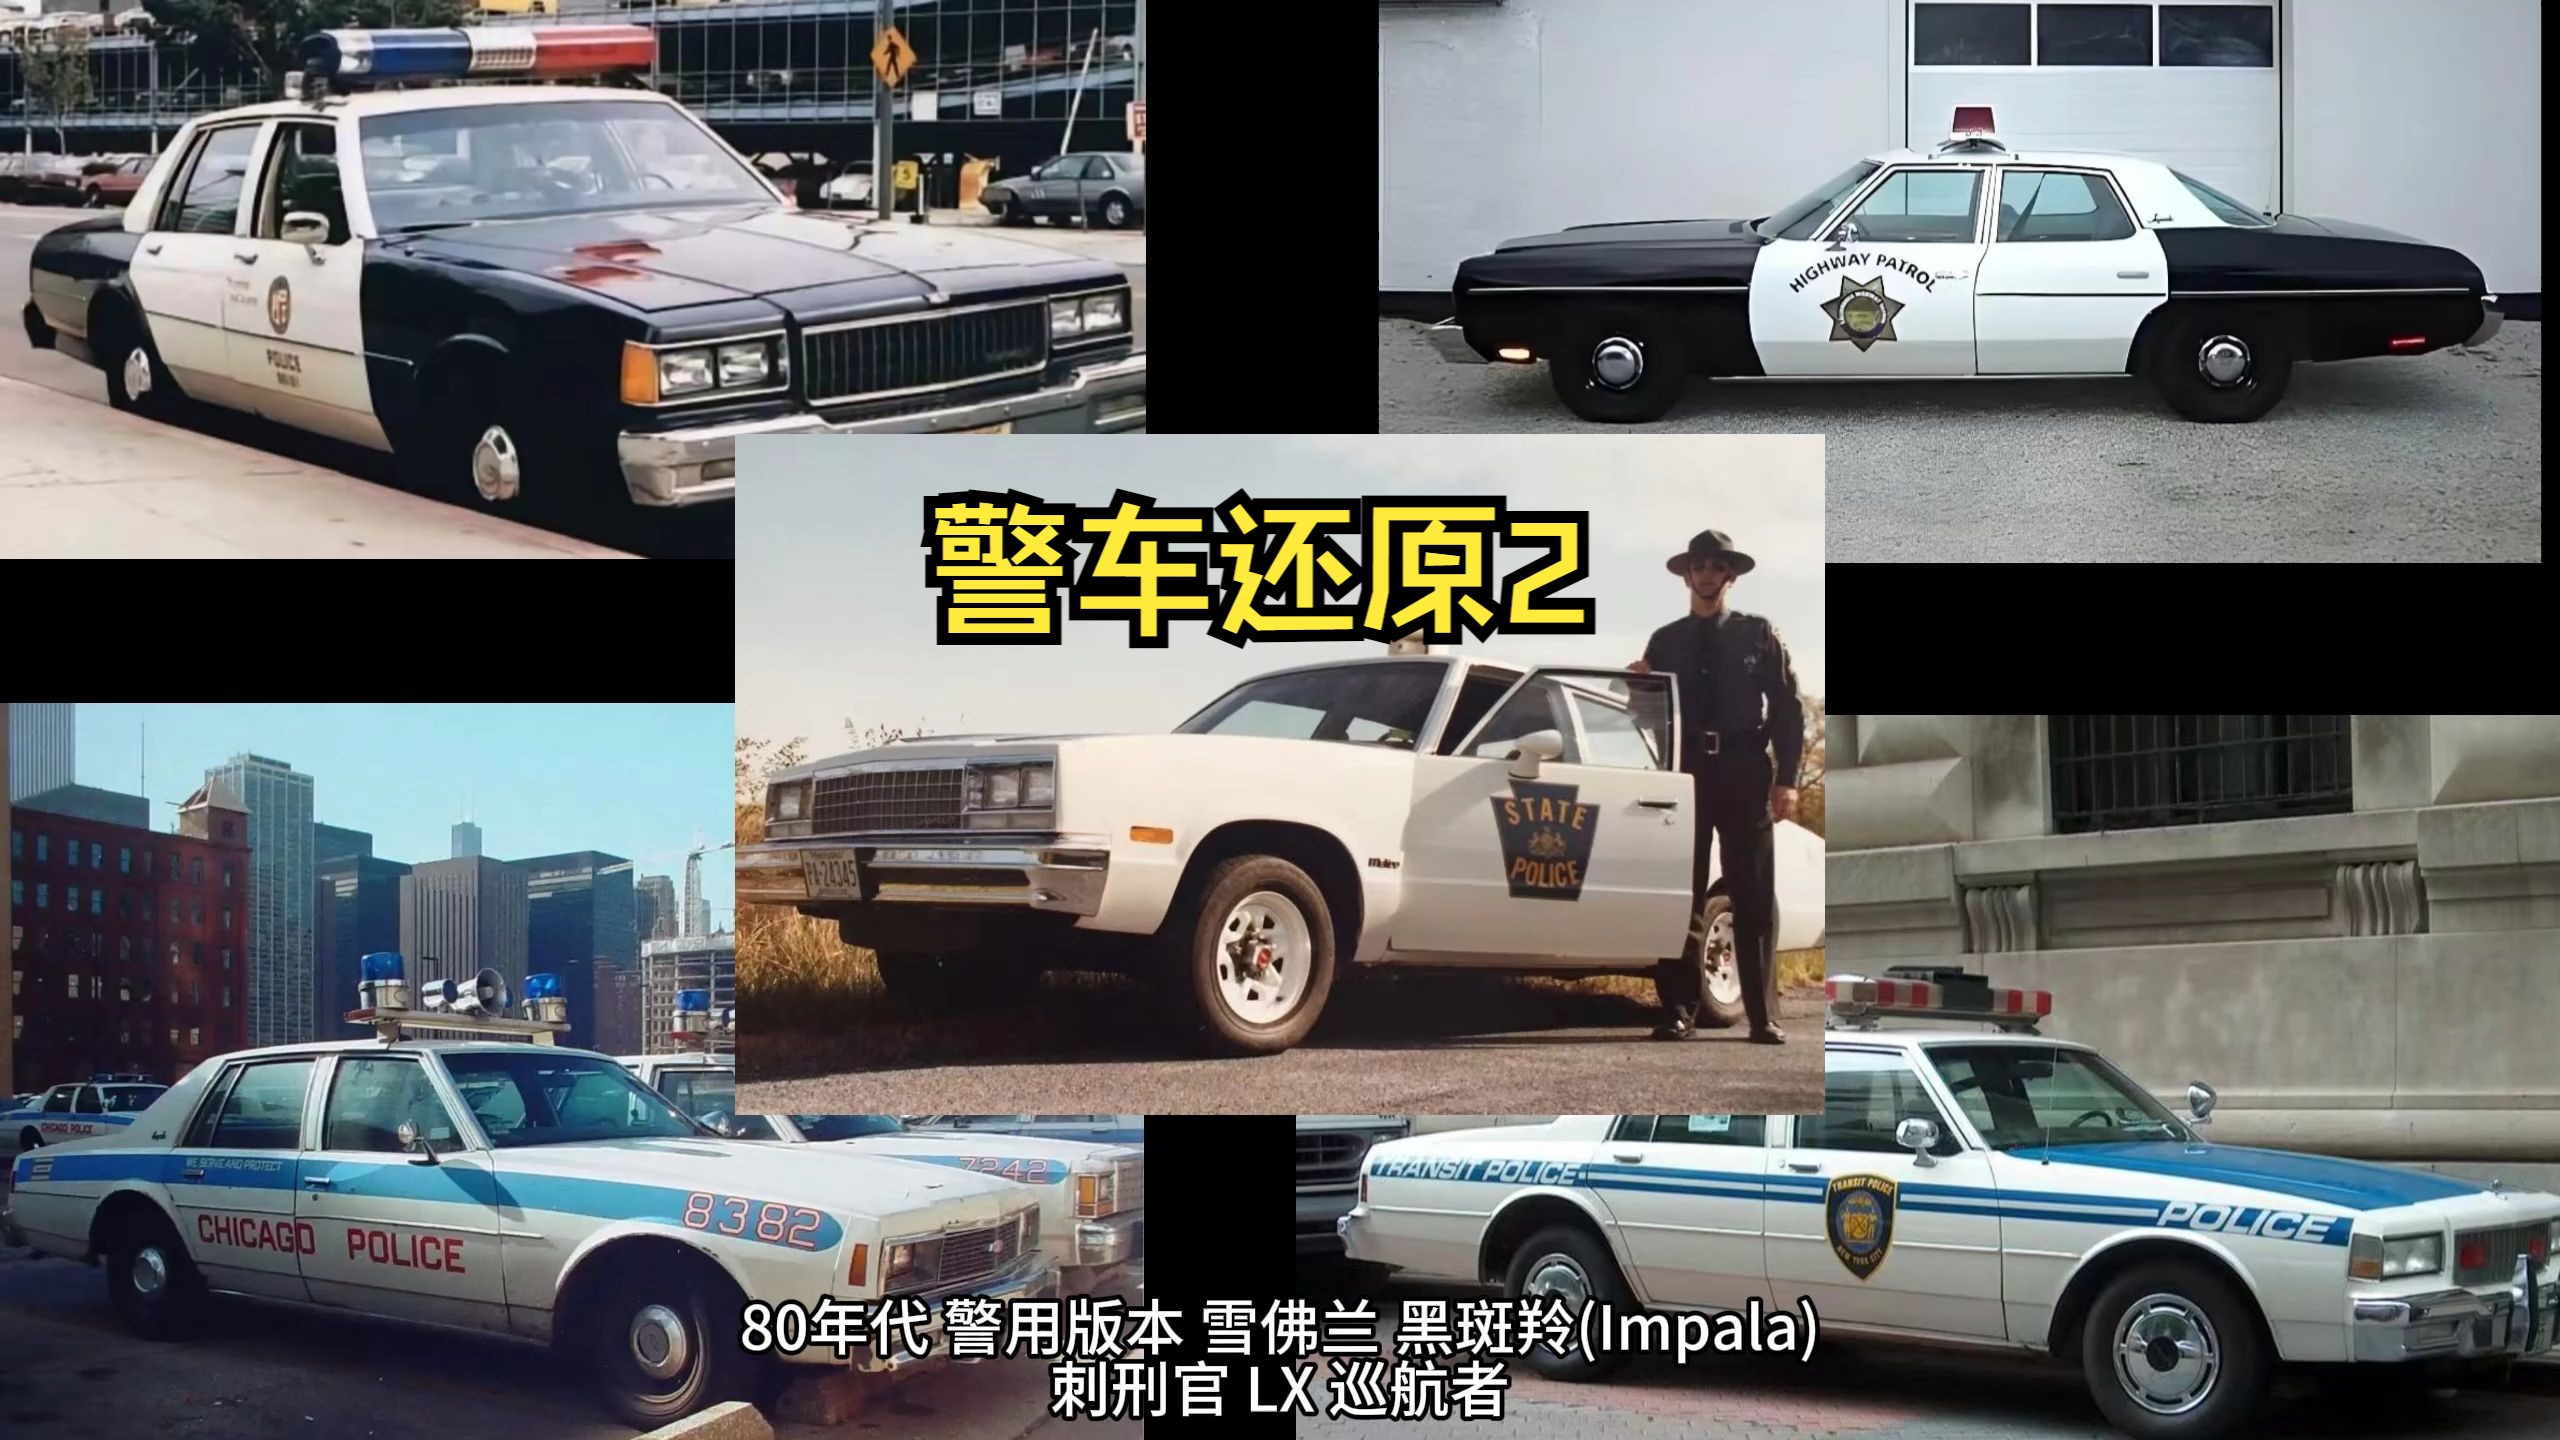 【贝尔改装铺】gtaol 警车还原 警用版本 雪佛兰 黑斑羚(impala) 刺刑